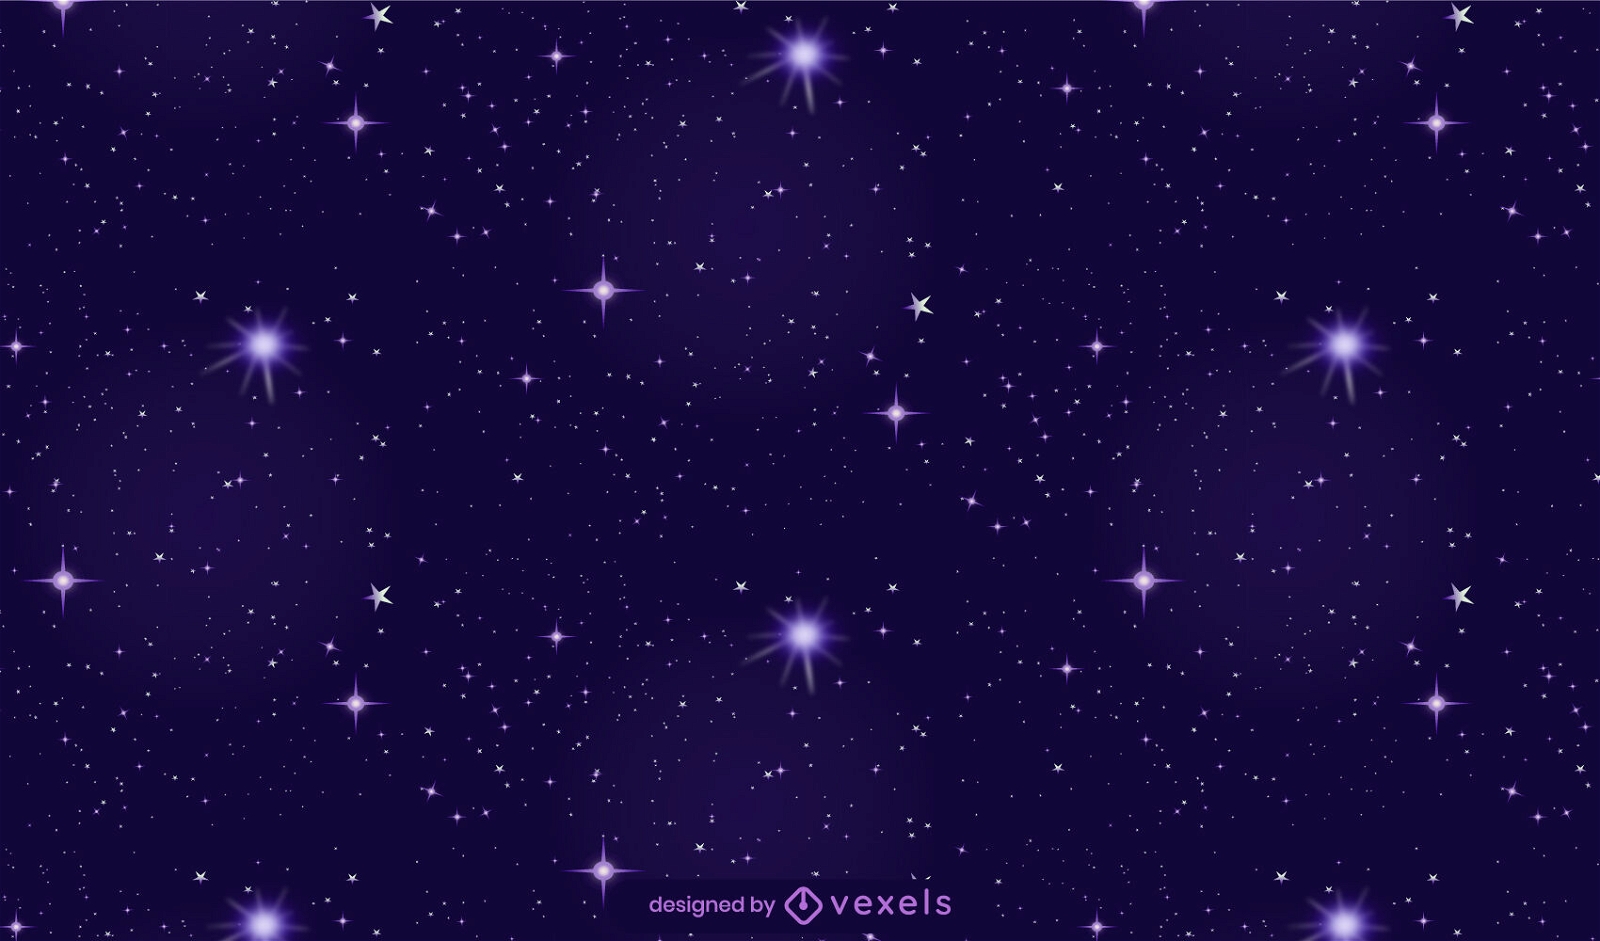 Galaxy-Himmel-Illustrationsdesign